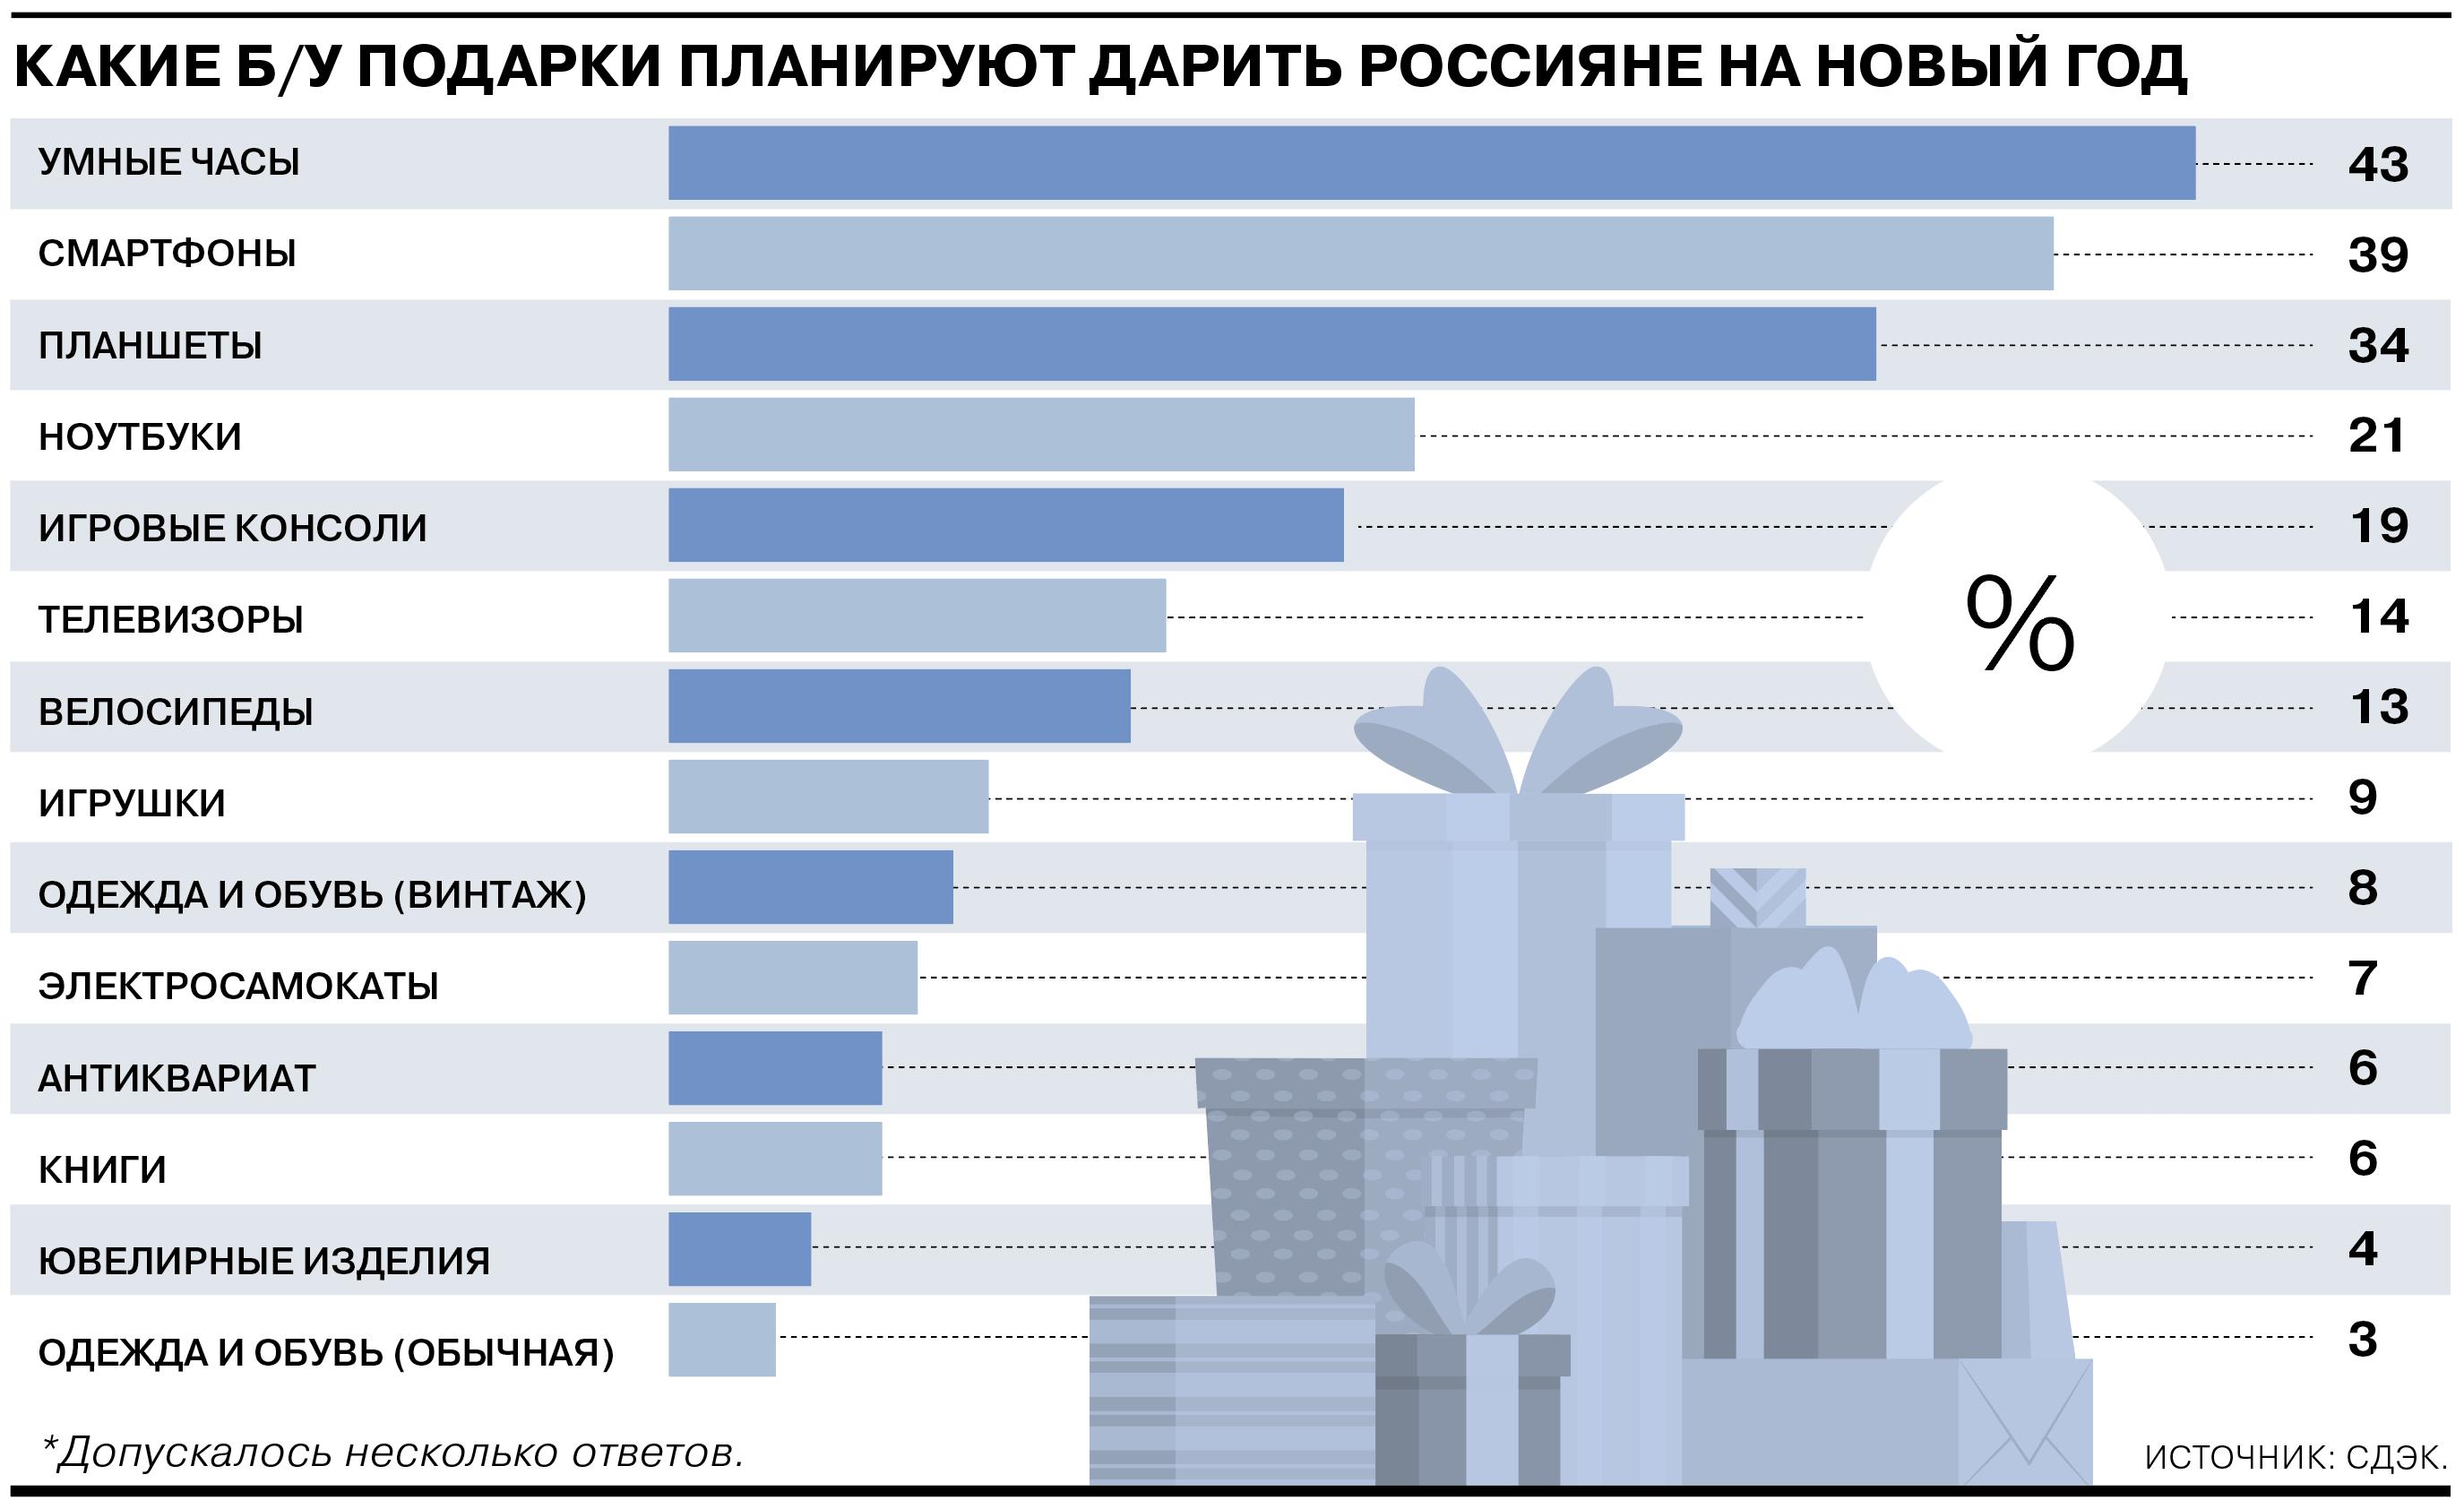 Каждый четвертый россиянин готов подарить на Новый год подержанные вещи